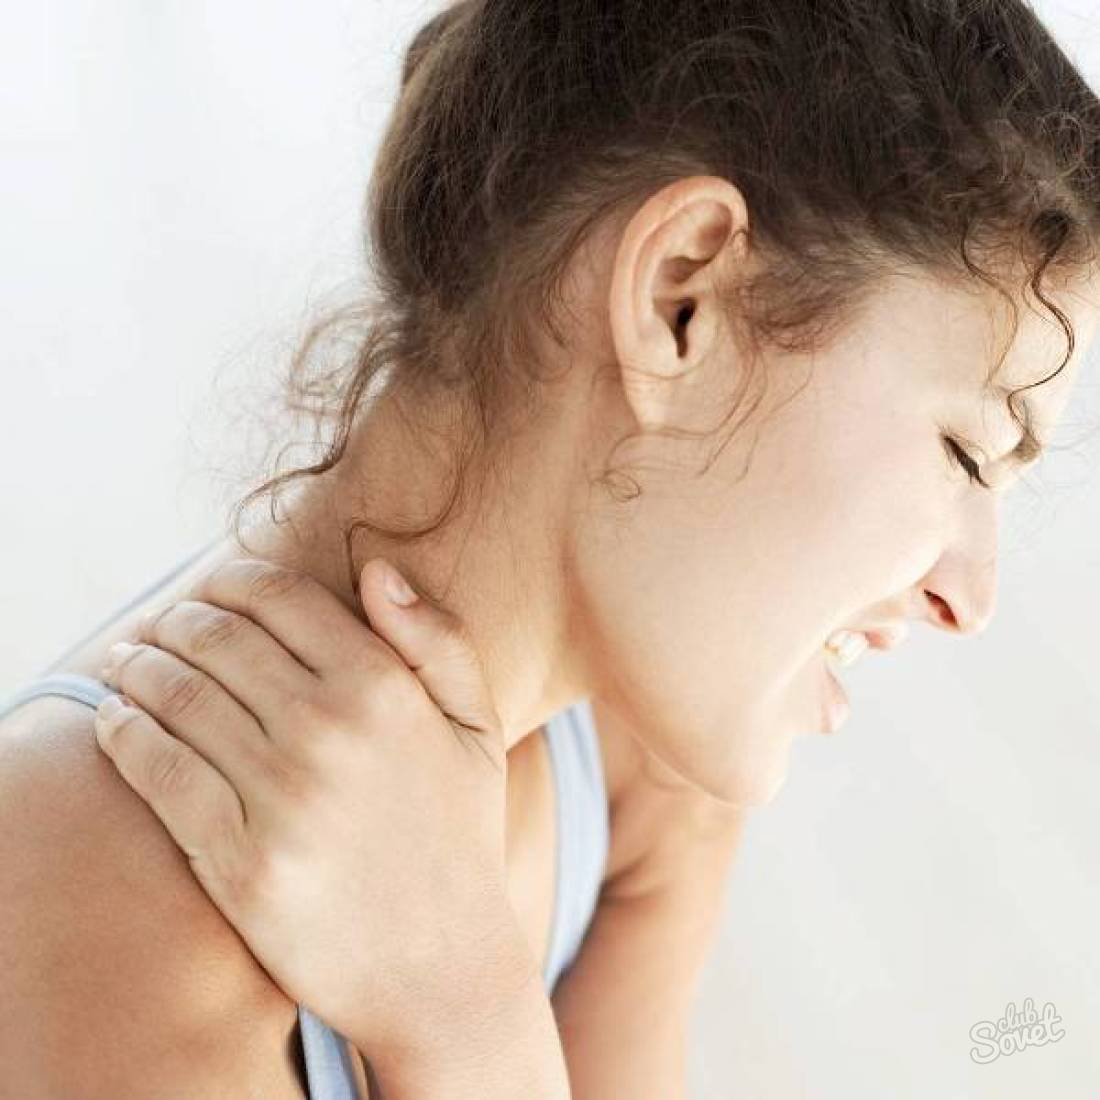 نحوه درمان osteochondrosis از گردن رحم